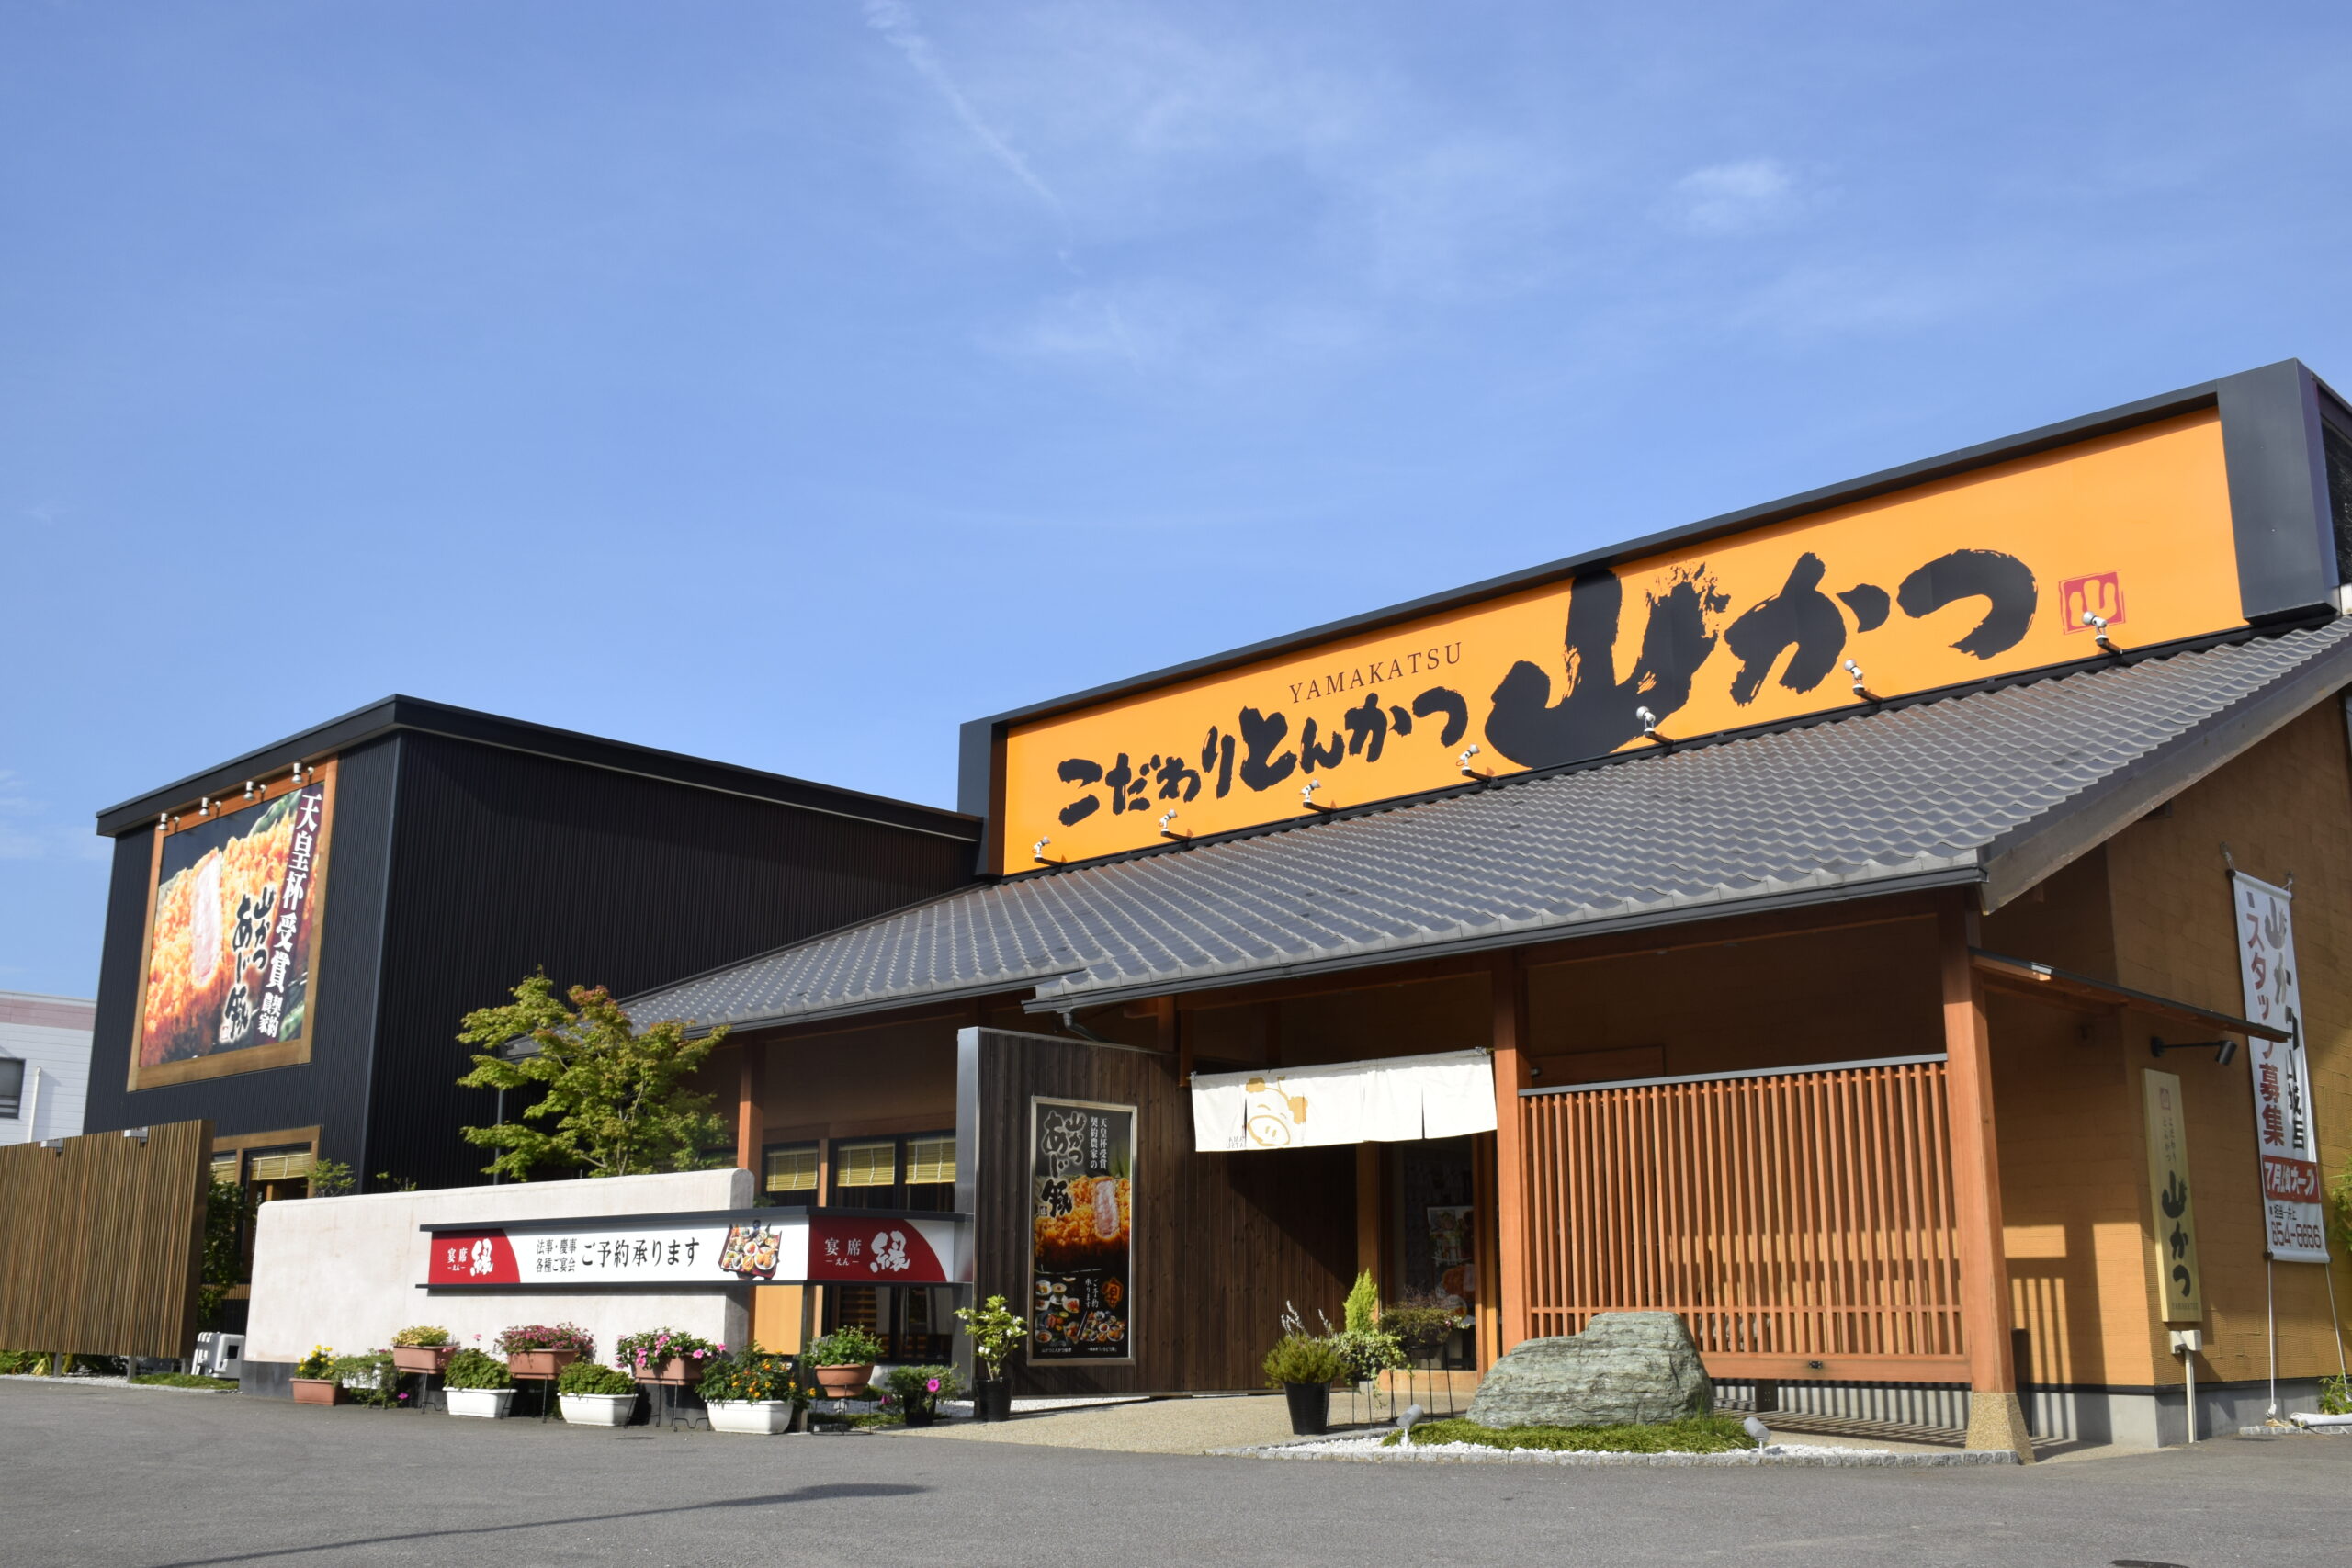 徳島県の派遣サイトに掲載中の店舗のイメージ写真です。